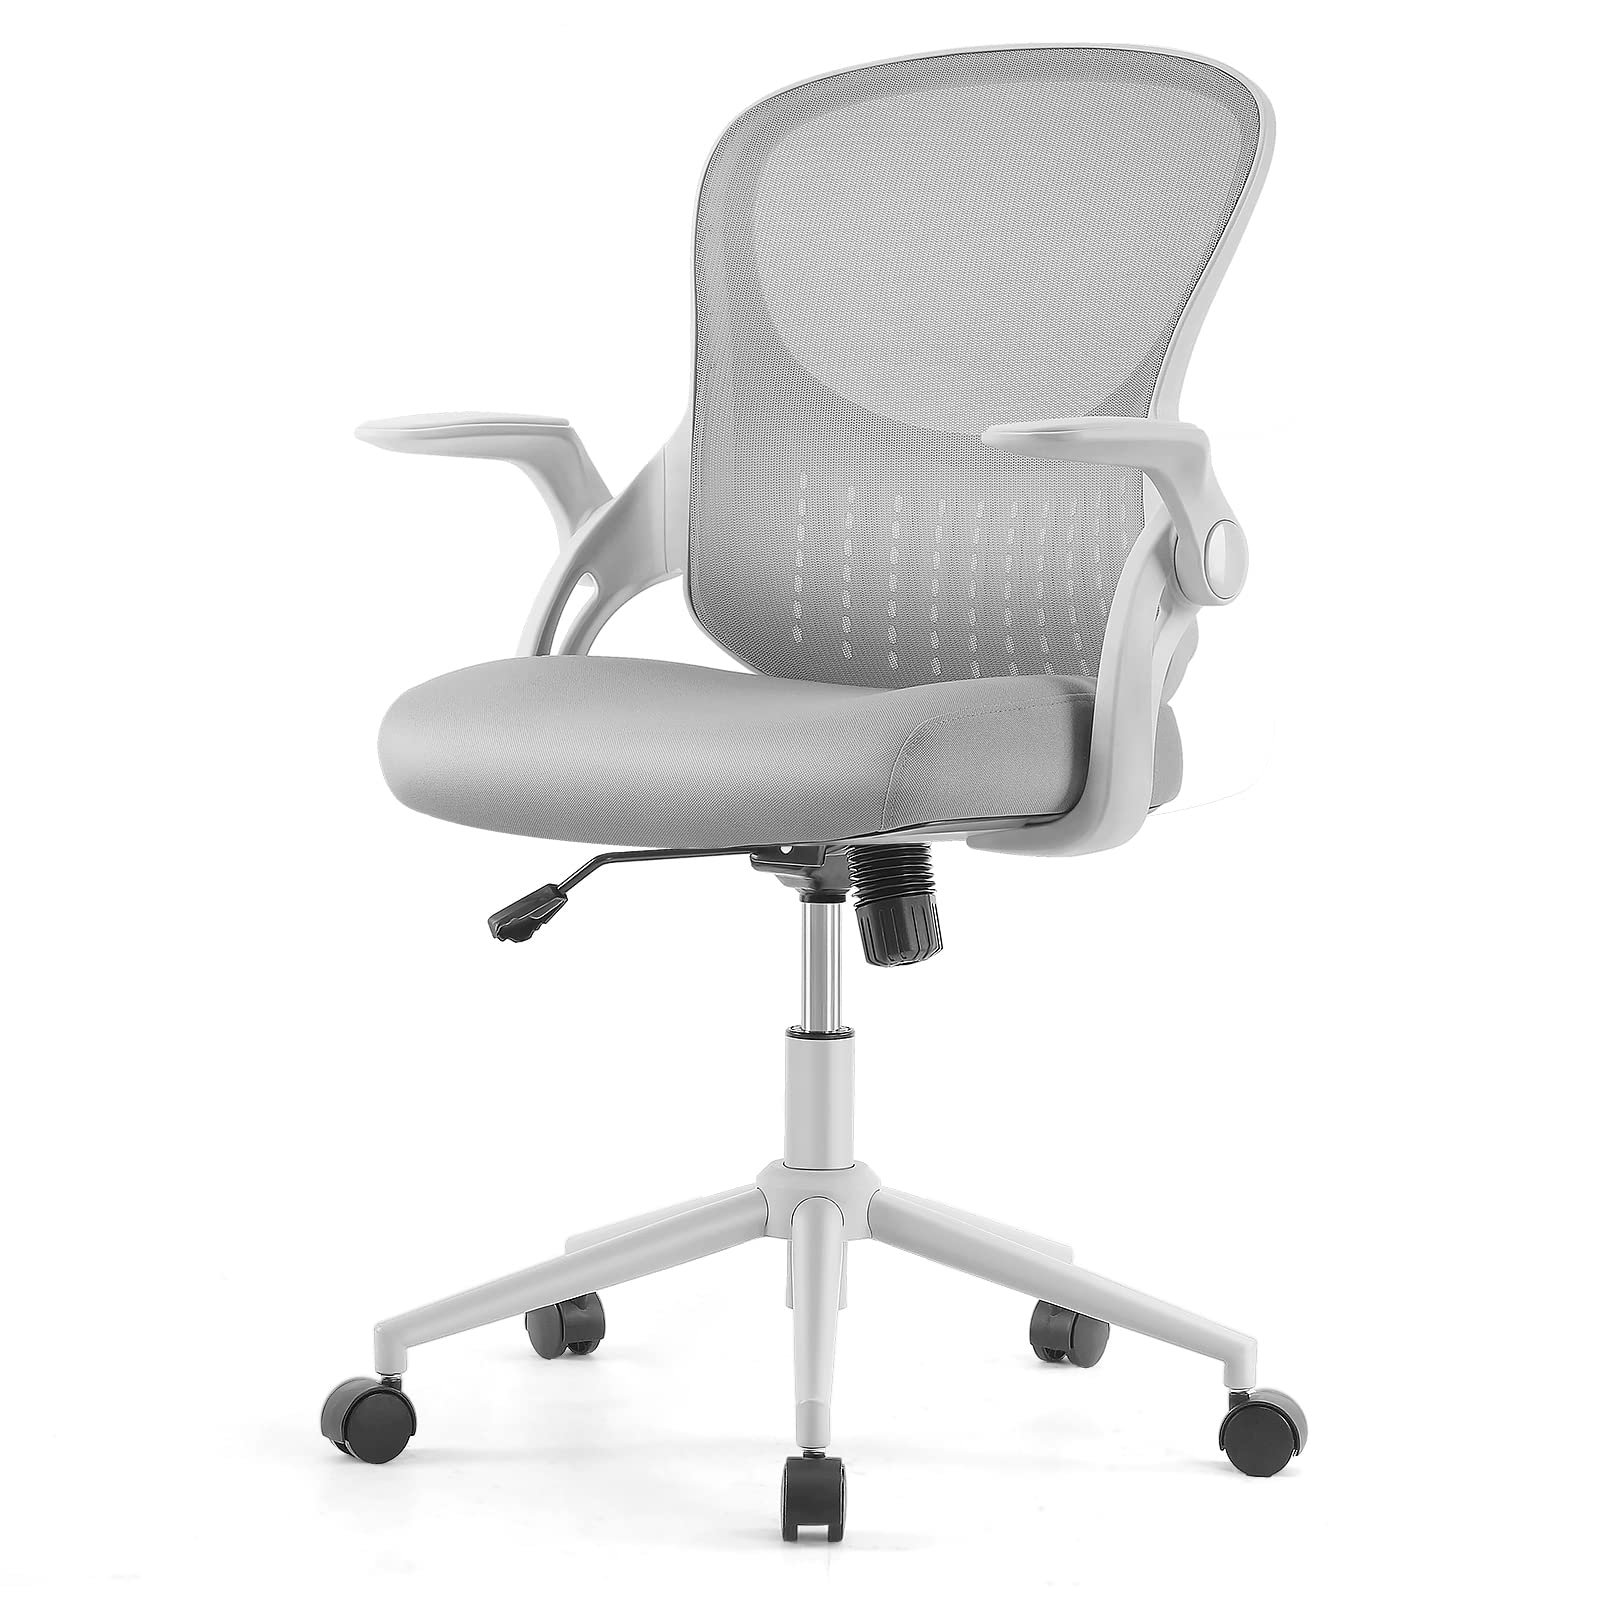 https://assets.wfcdn.com/im/00697531/compr-r85/2421/242187935/jermica-home-office-ergonomic-mesh-task-chair.jpg